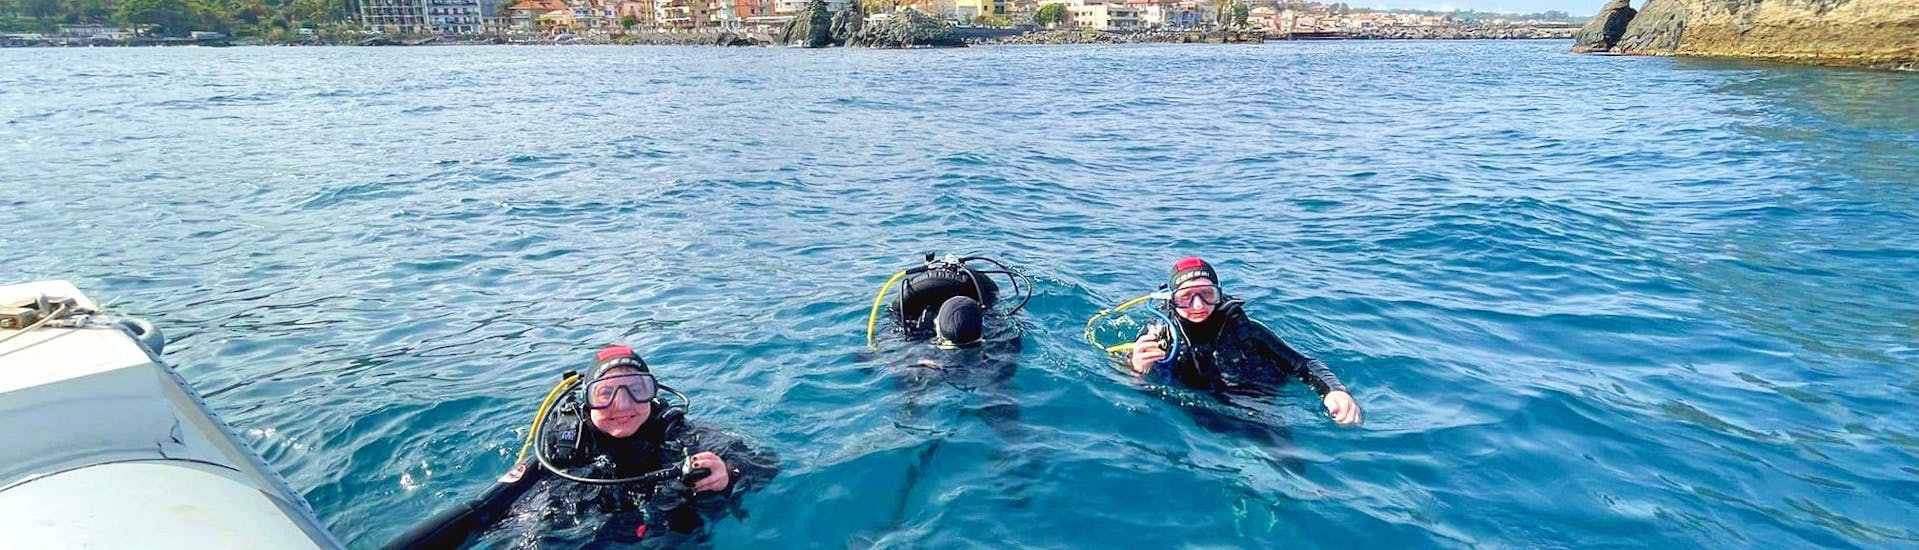 Gente en el mar usando el equipo de buceo durante la prueba de buceo en Aci Castello, cerca de Catania, con Etna & Sea Excursions Catania.